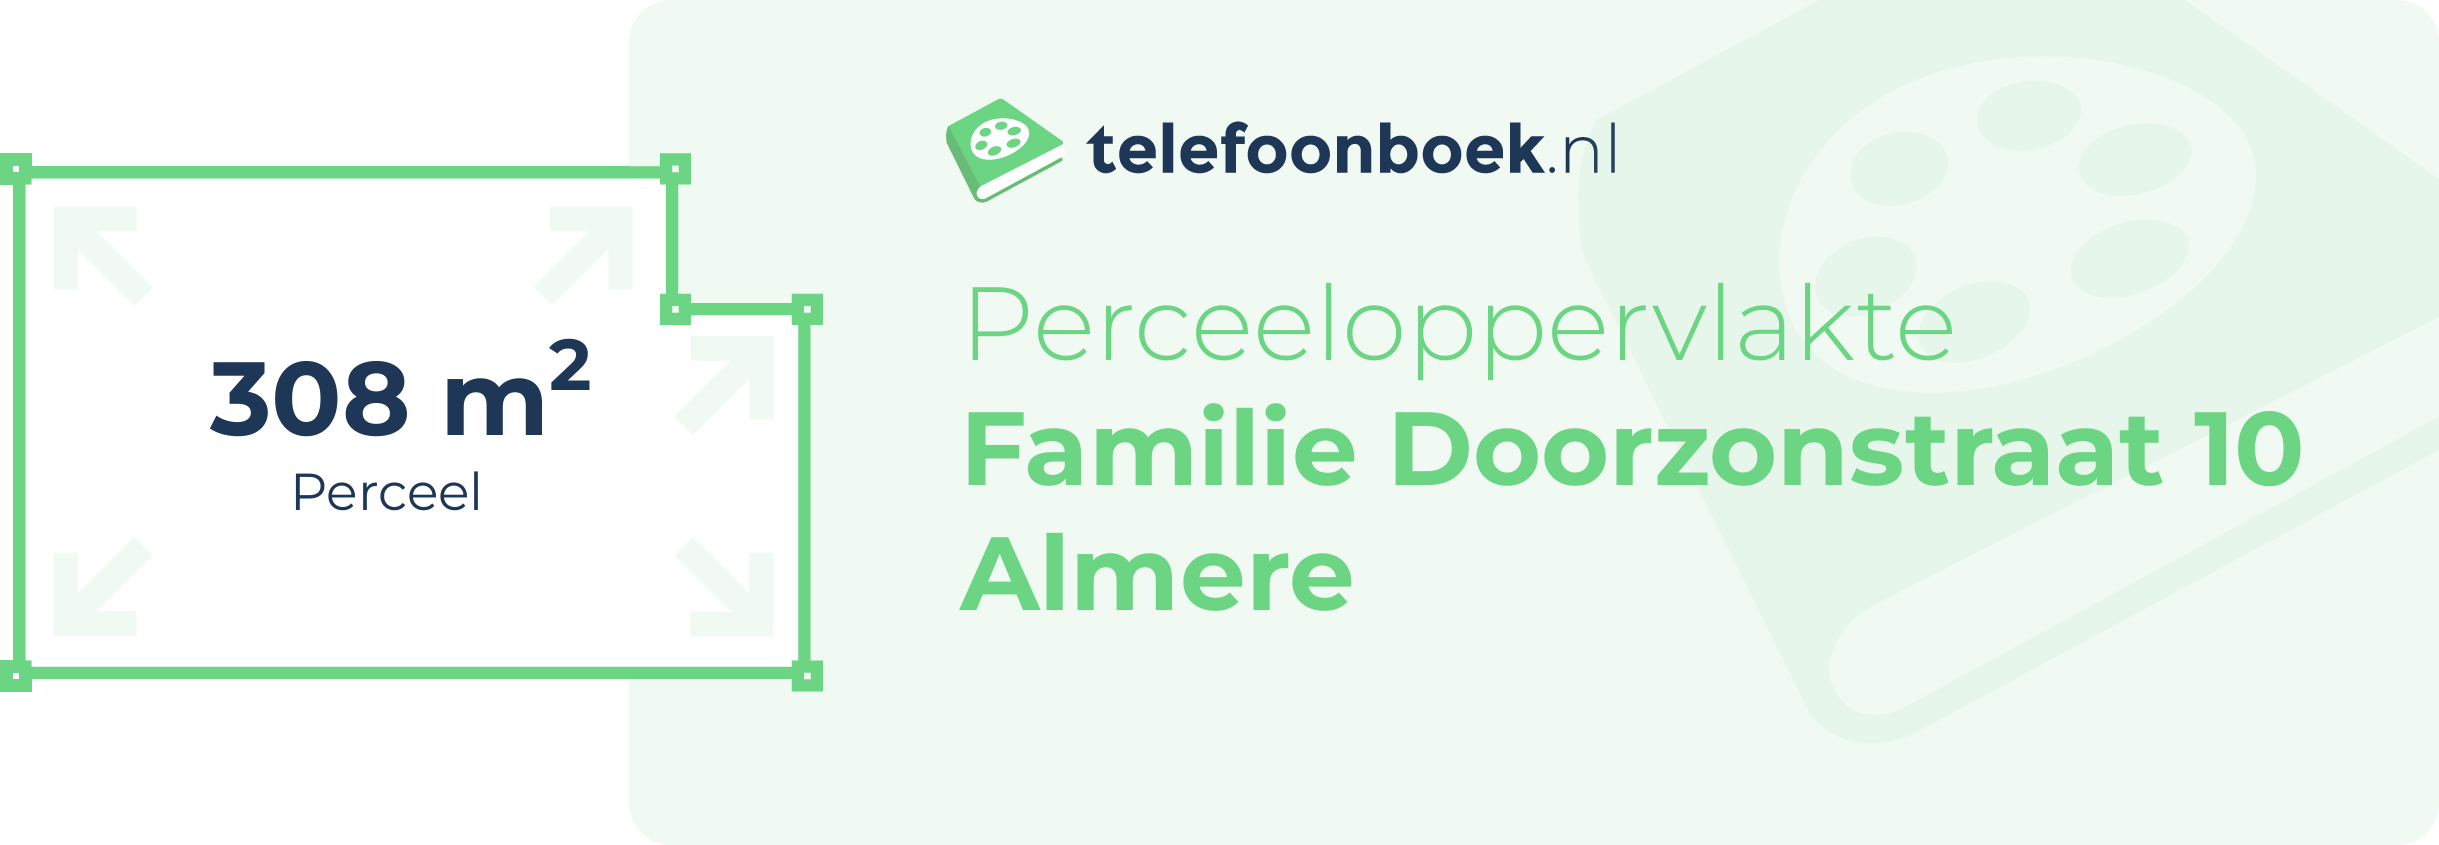 Perceeloppervlakte Familie Doorzonstraat 10 Almere